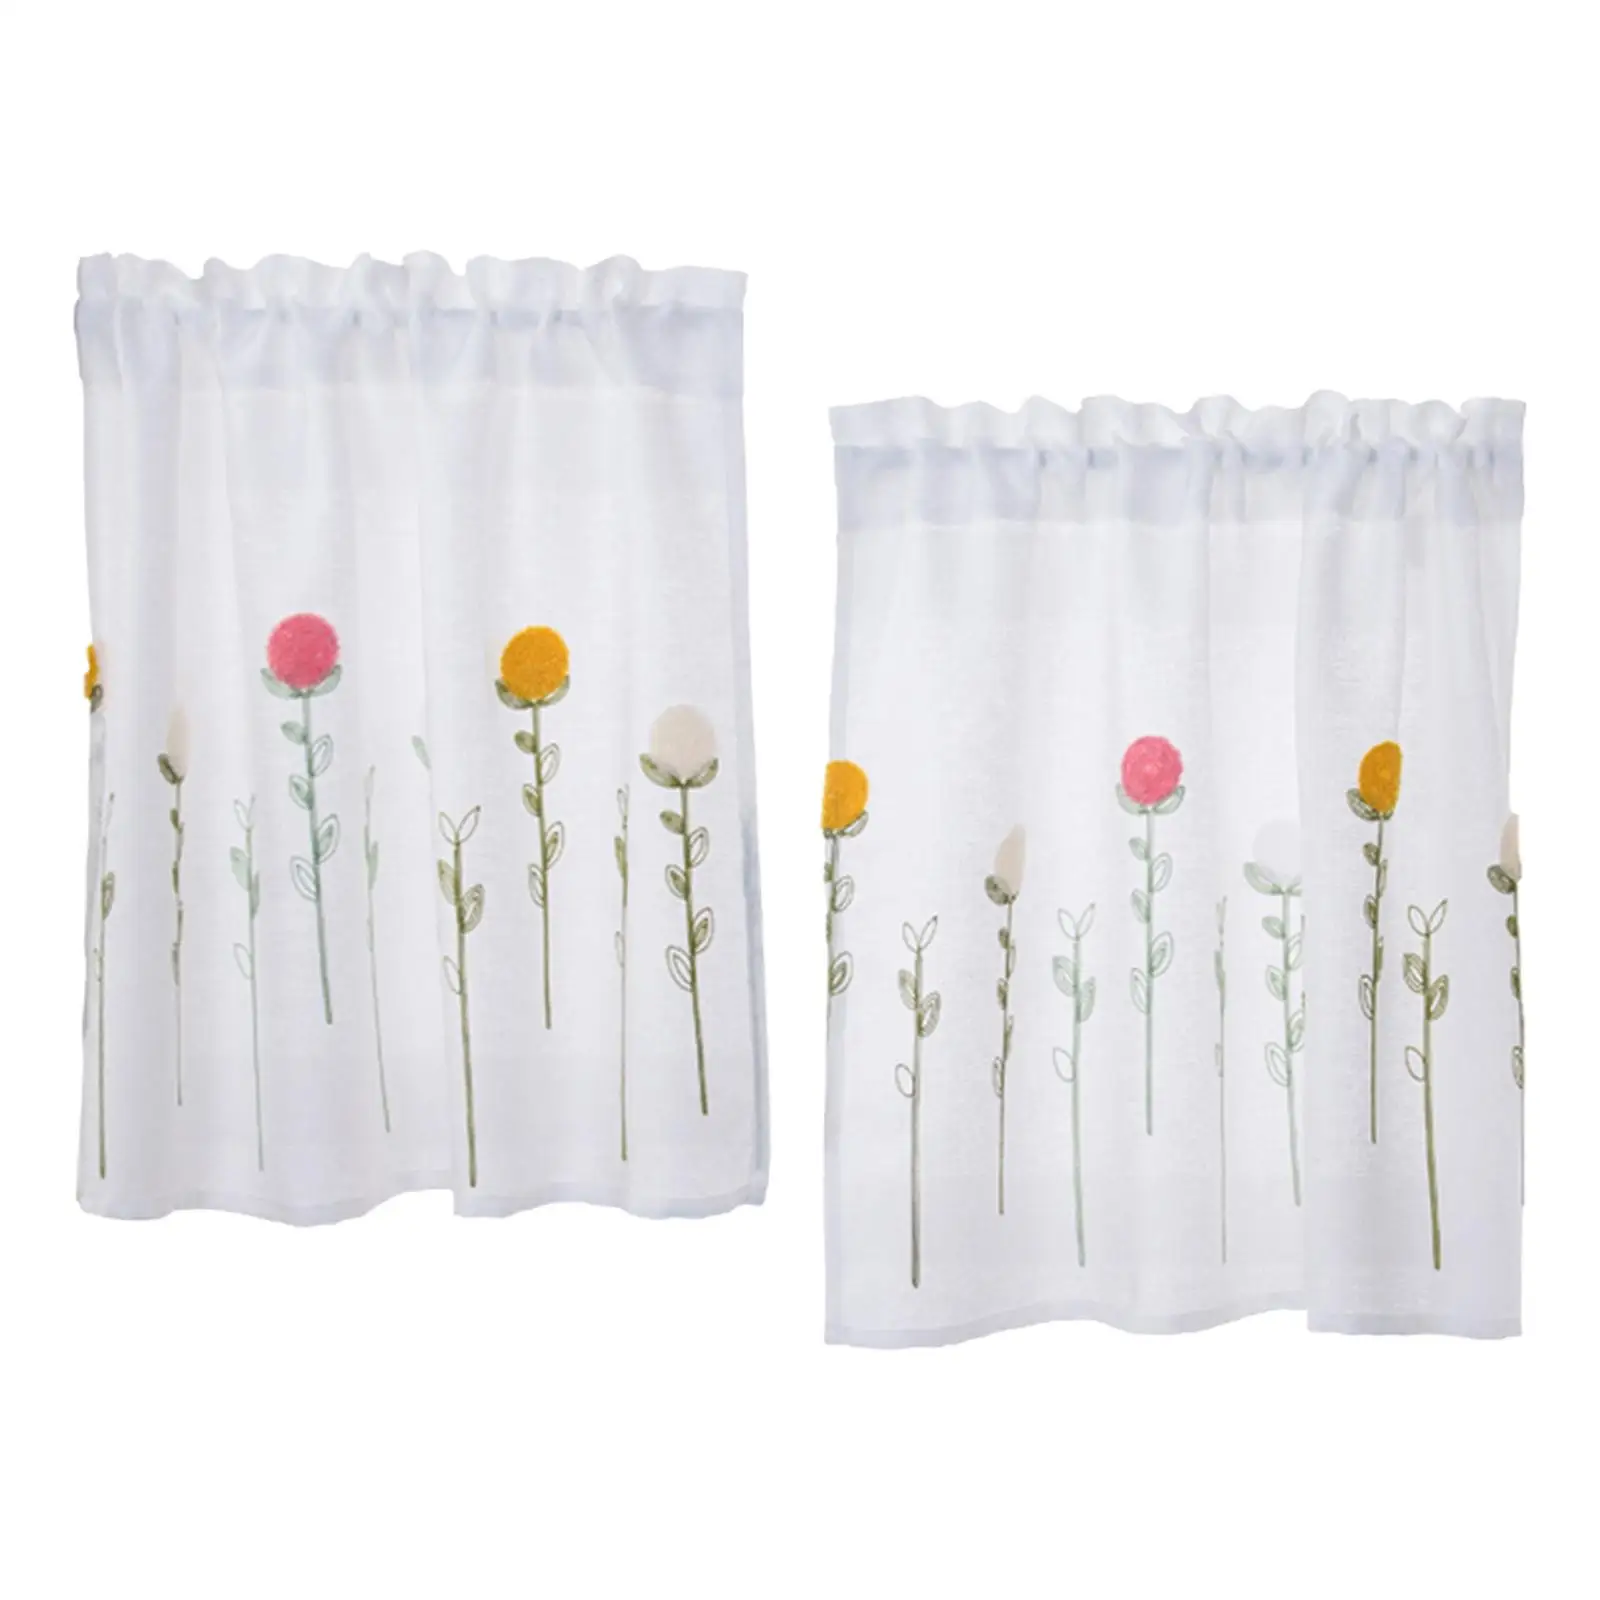 Rod Pocket Short Curtain Drapes Short Curtains for Small Window Door Bedroom Flower 74cmx61cm